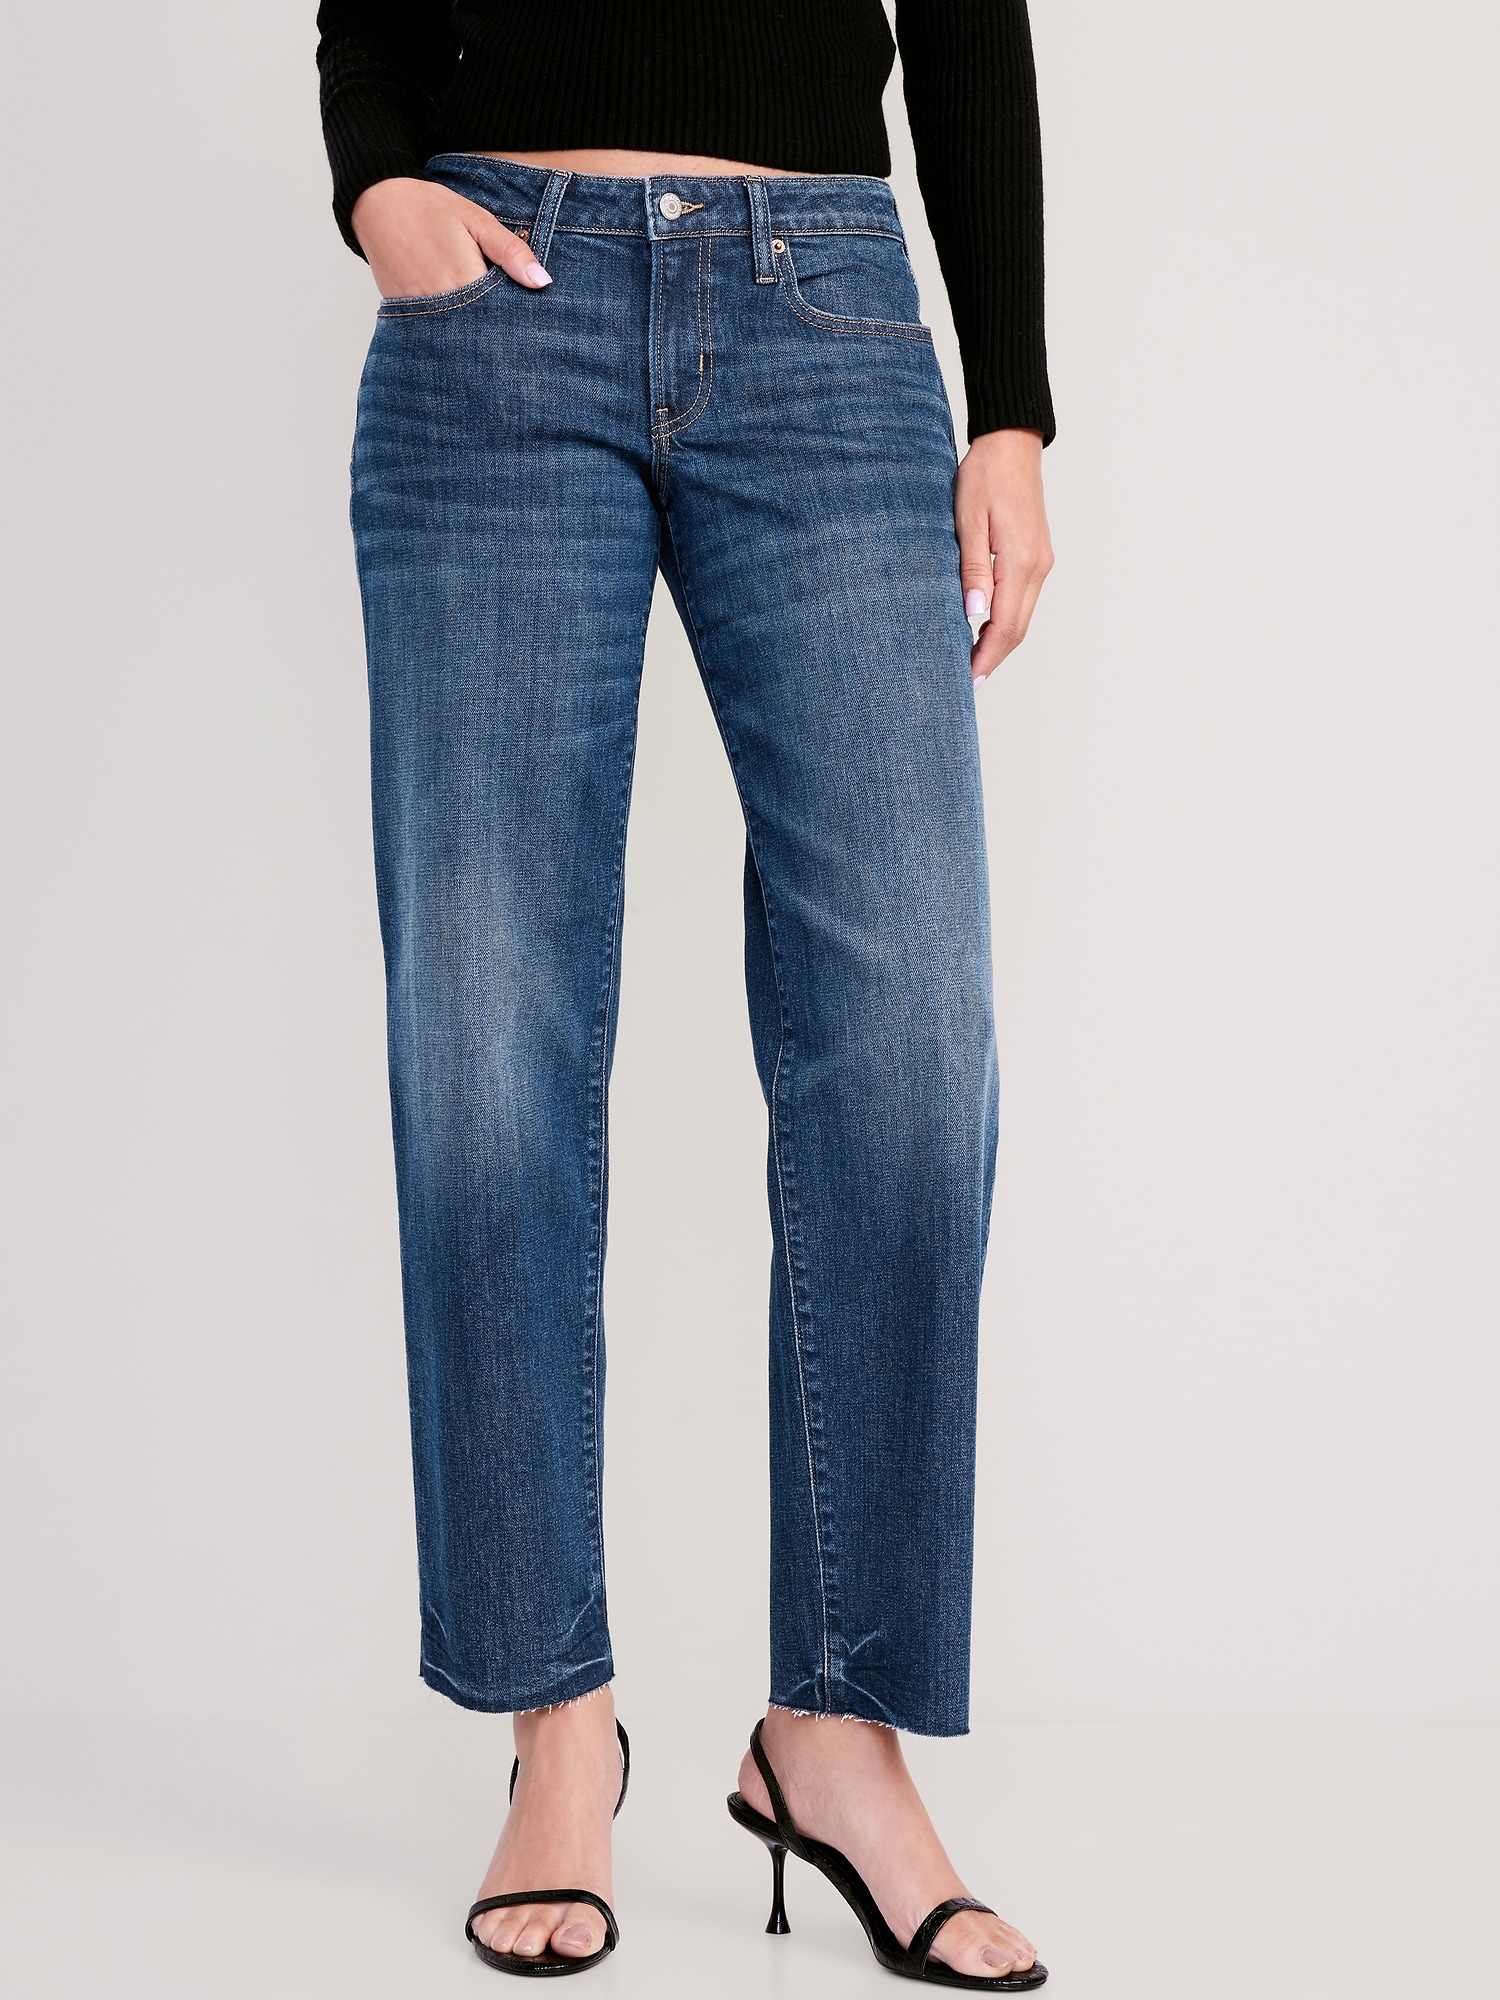 Oldnavy Low-Rise OG Loose Cut-Off Jeans for Women